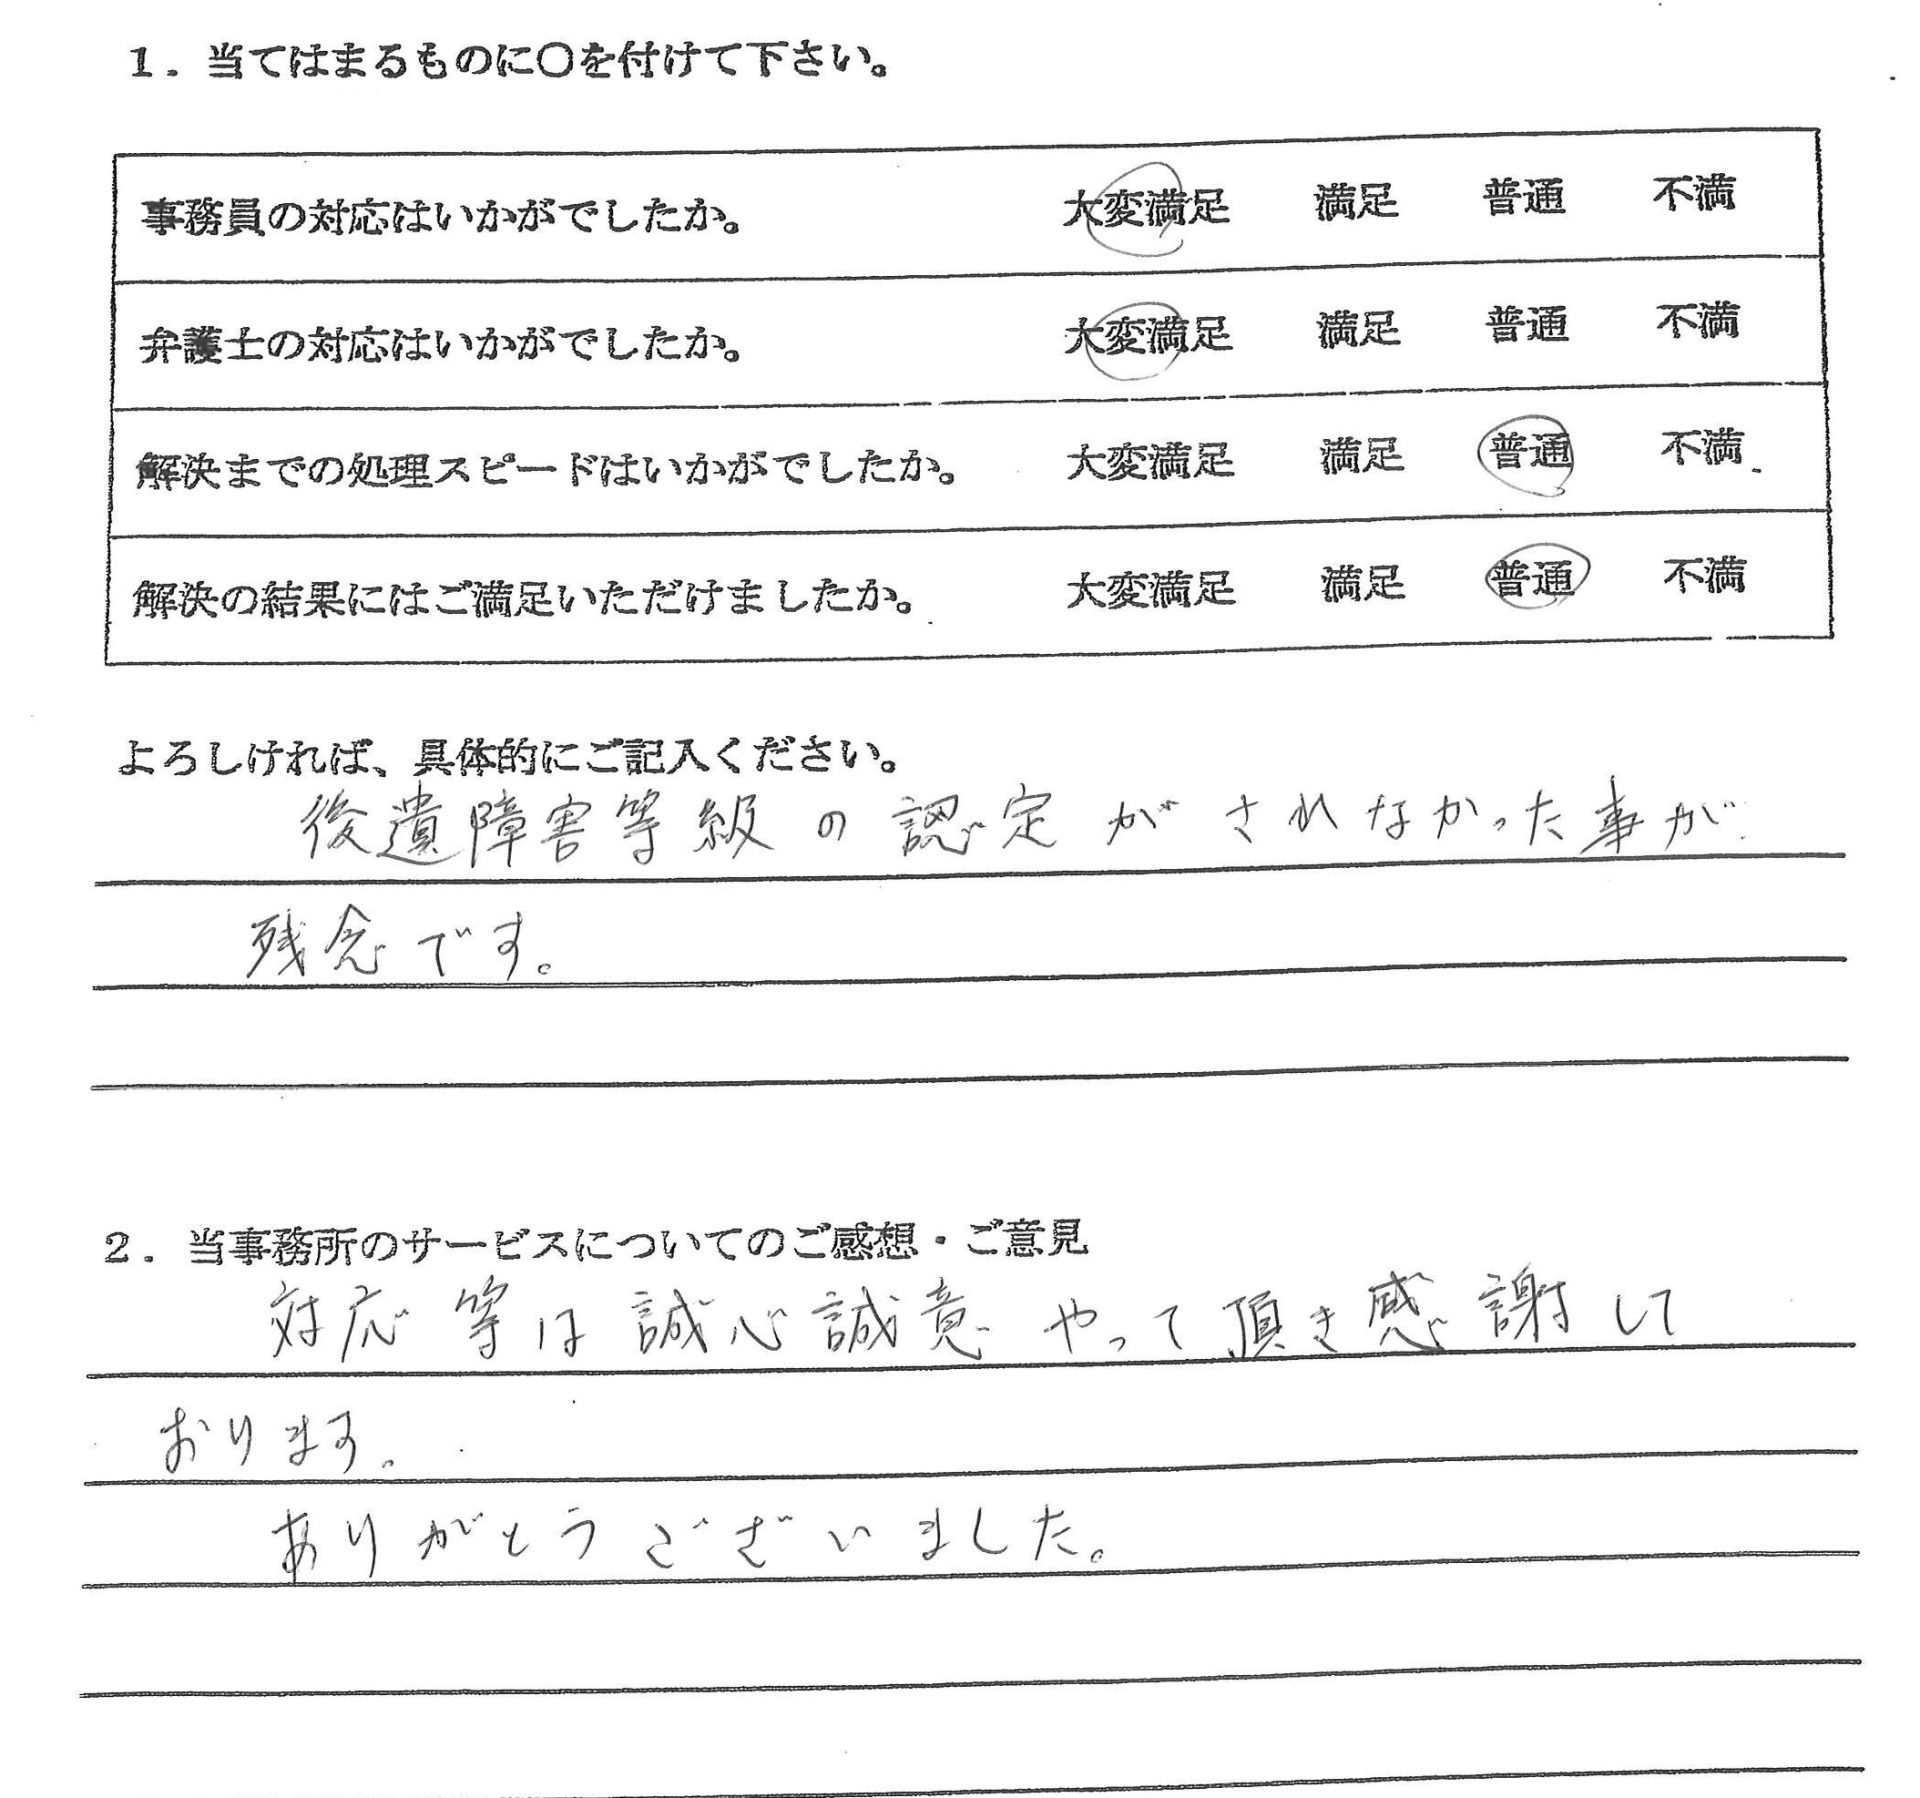 愛知県豊田市の男性の交通事故、弁護士による示談交渉で解決した事案 : 